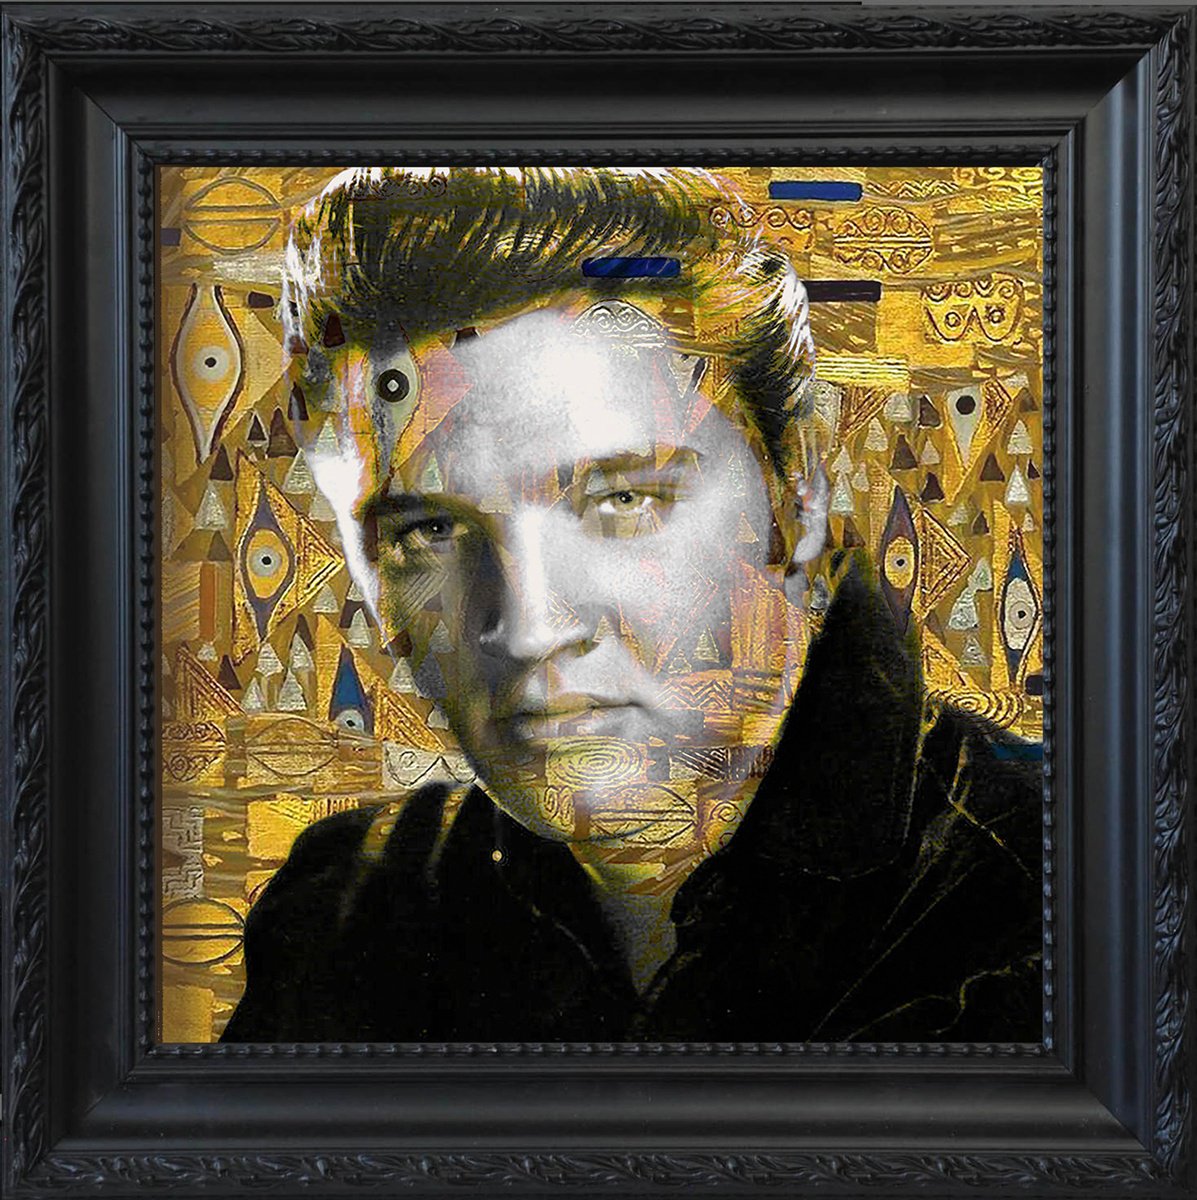 Elvis meets Klimt by Daan van Doorn